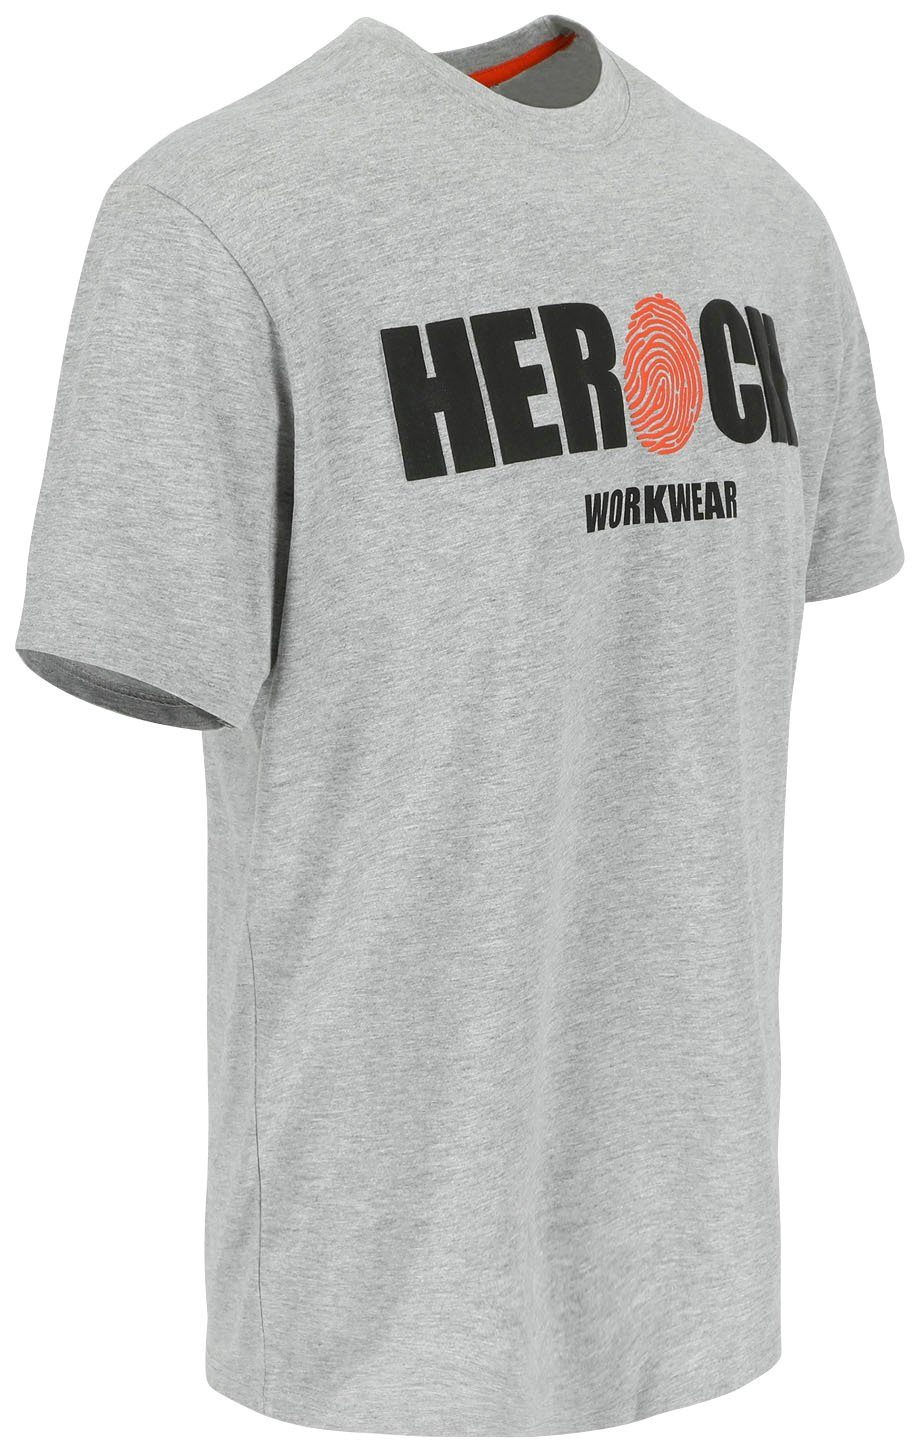 Herock T-Shirt ENI Baumwolle, Rundhals, Herock®-Aufdruck, angenehmes grau mit Tragegefühl